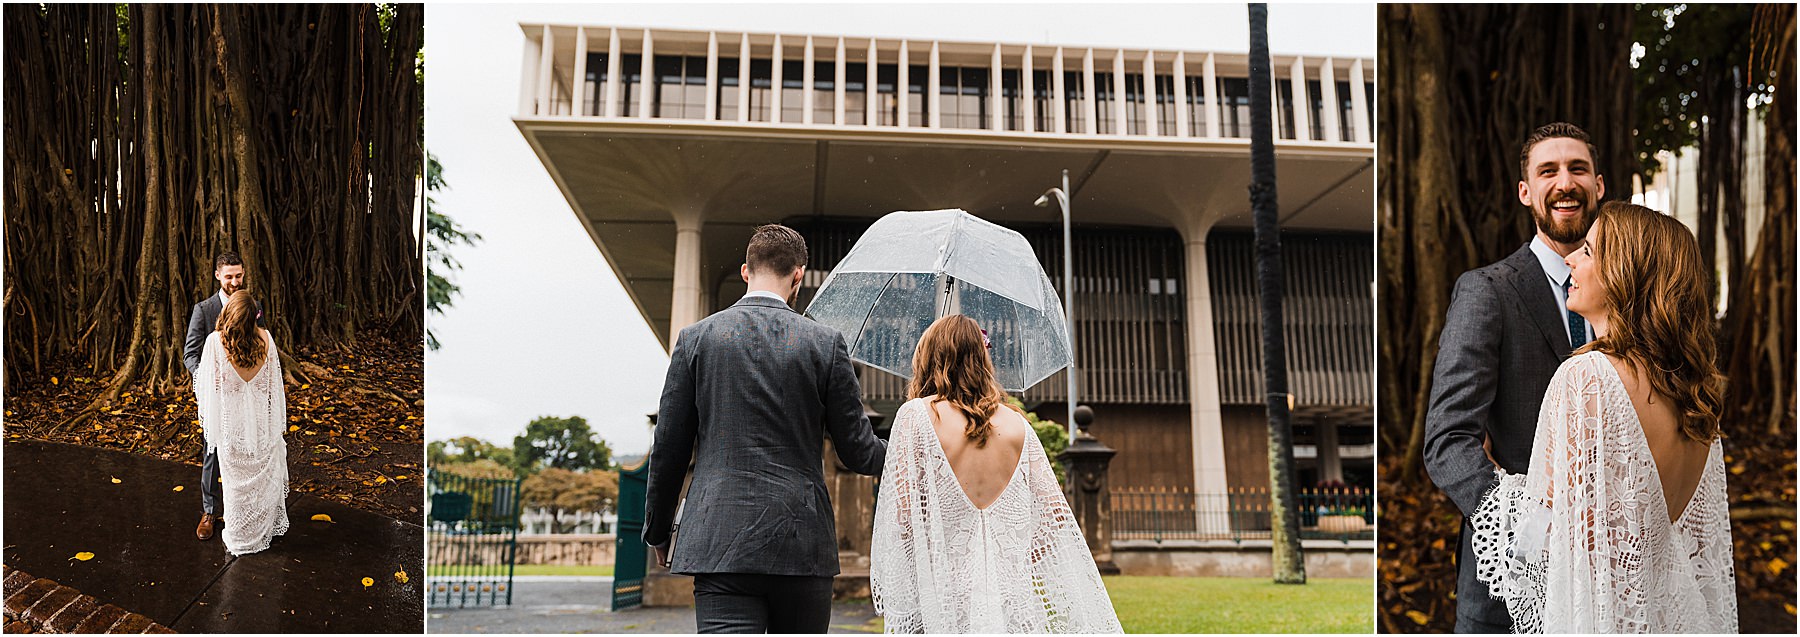 bride and groom eloping in hawaii